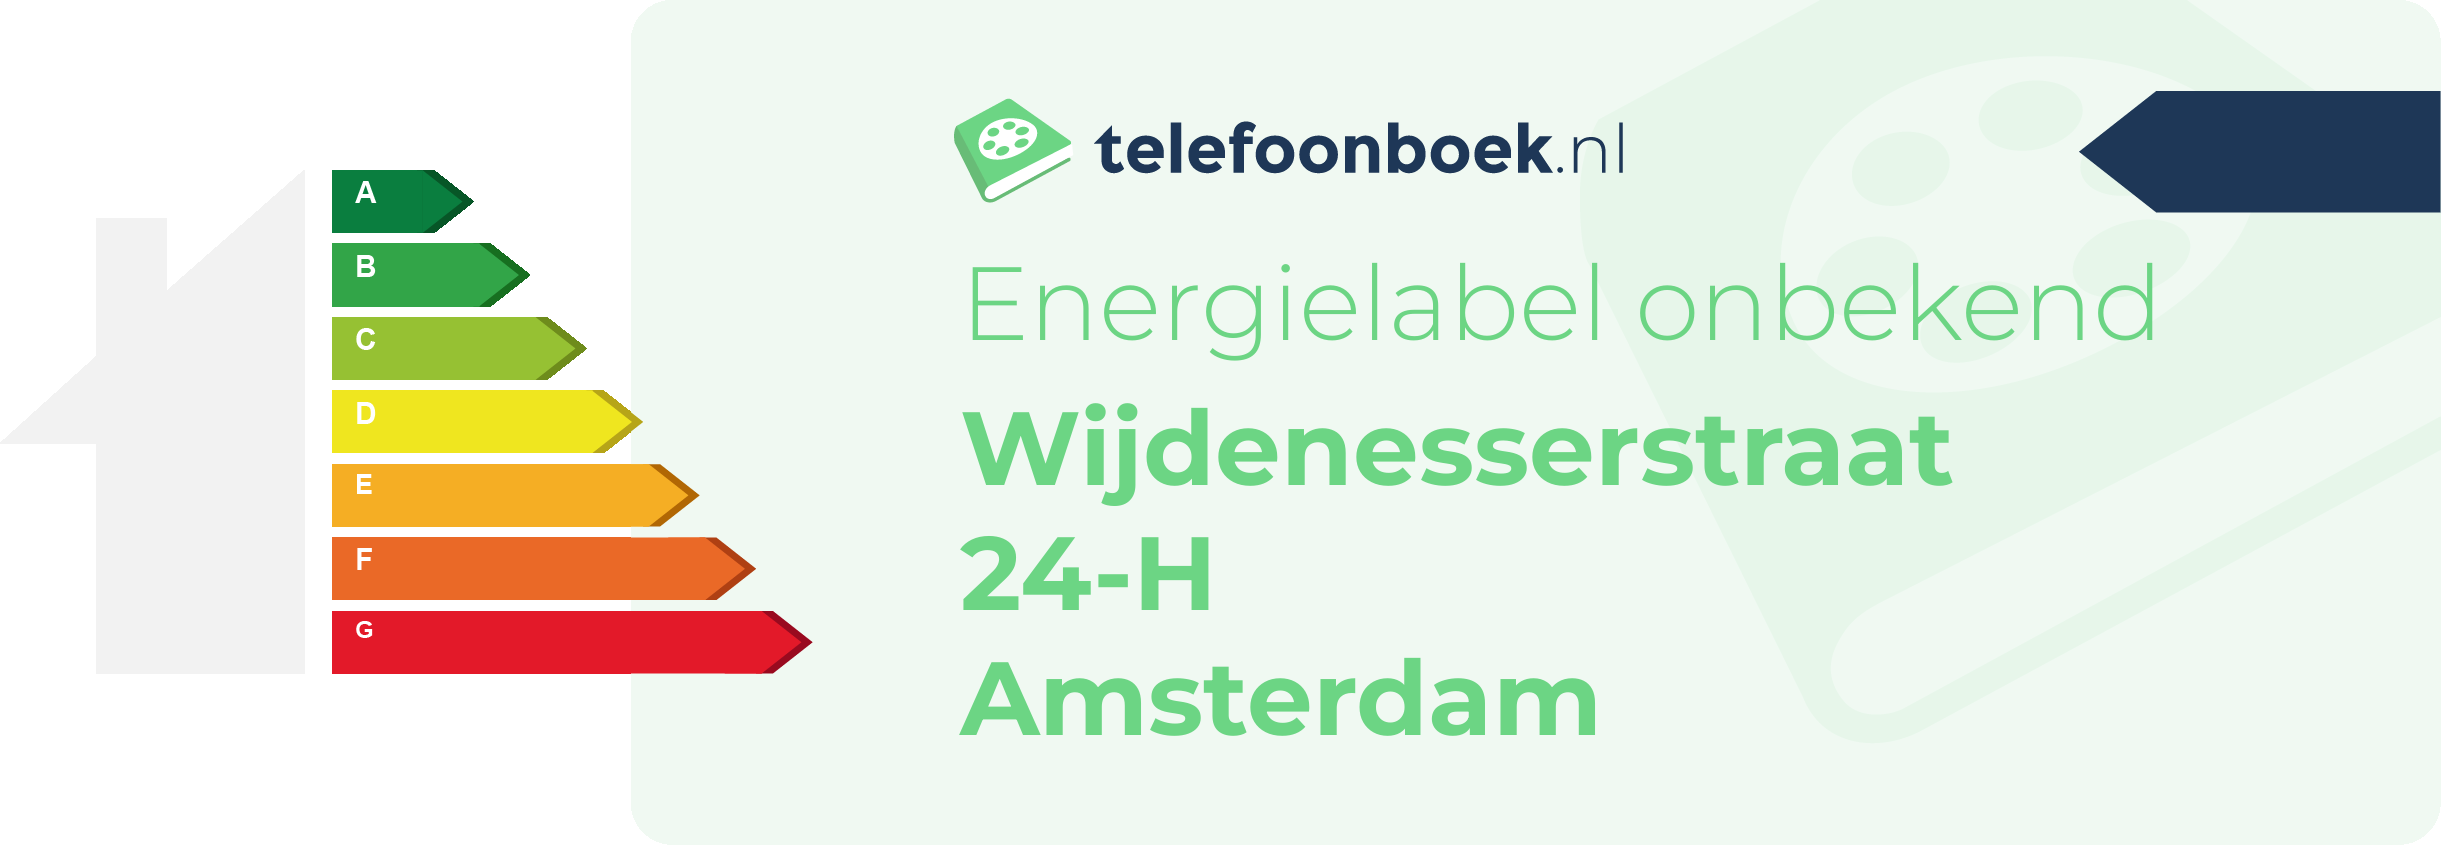 Energielabel Wijdenesserstraat 24-H Amsterdam